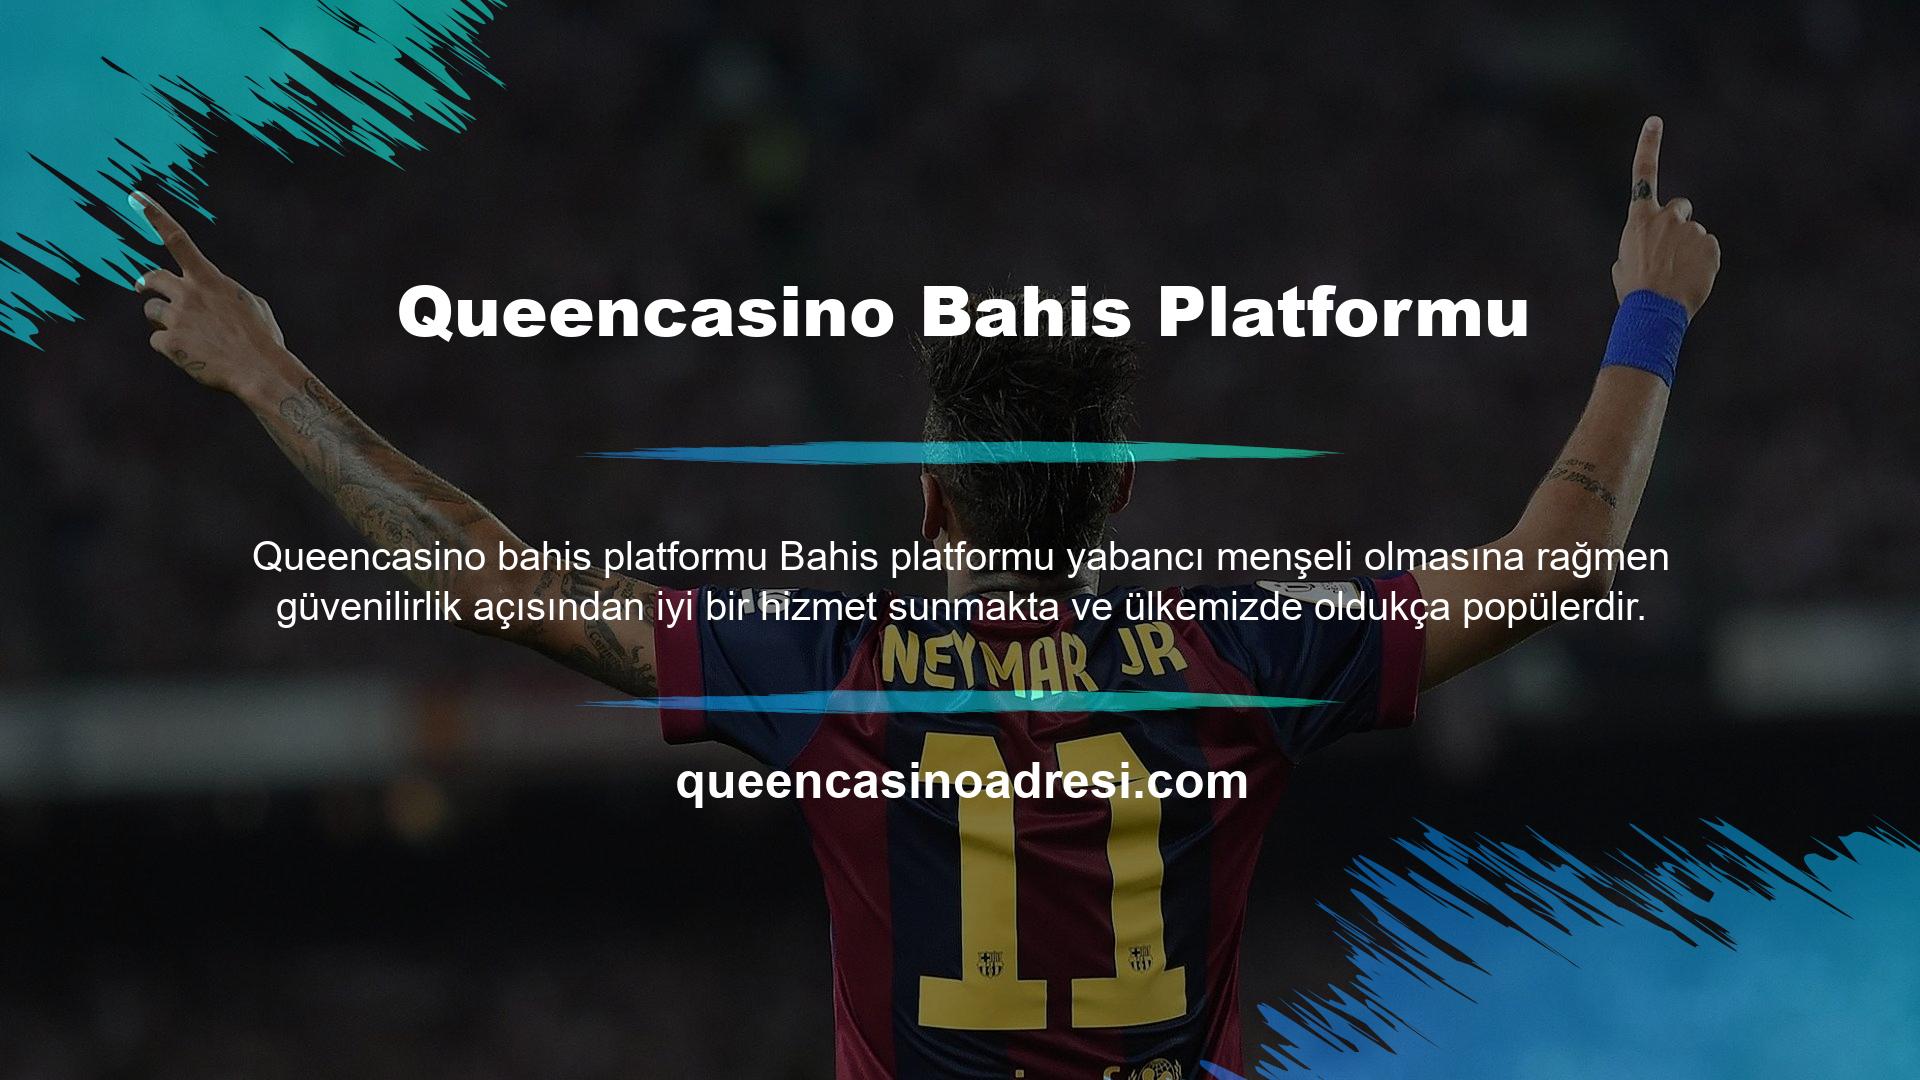 Queencasino giriş platformu, ülkemiz kurallarına tam uyumu ve global olarak lisanslama başarısı ile dikkat çekmektedir